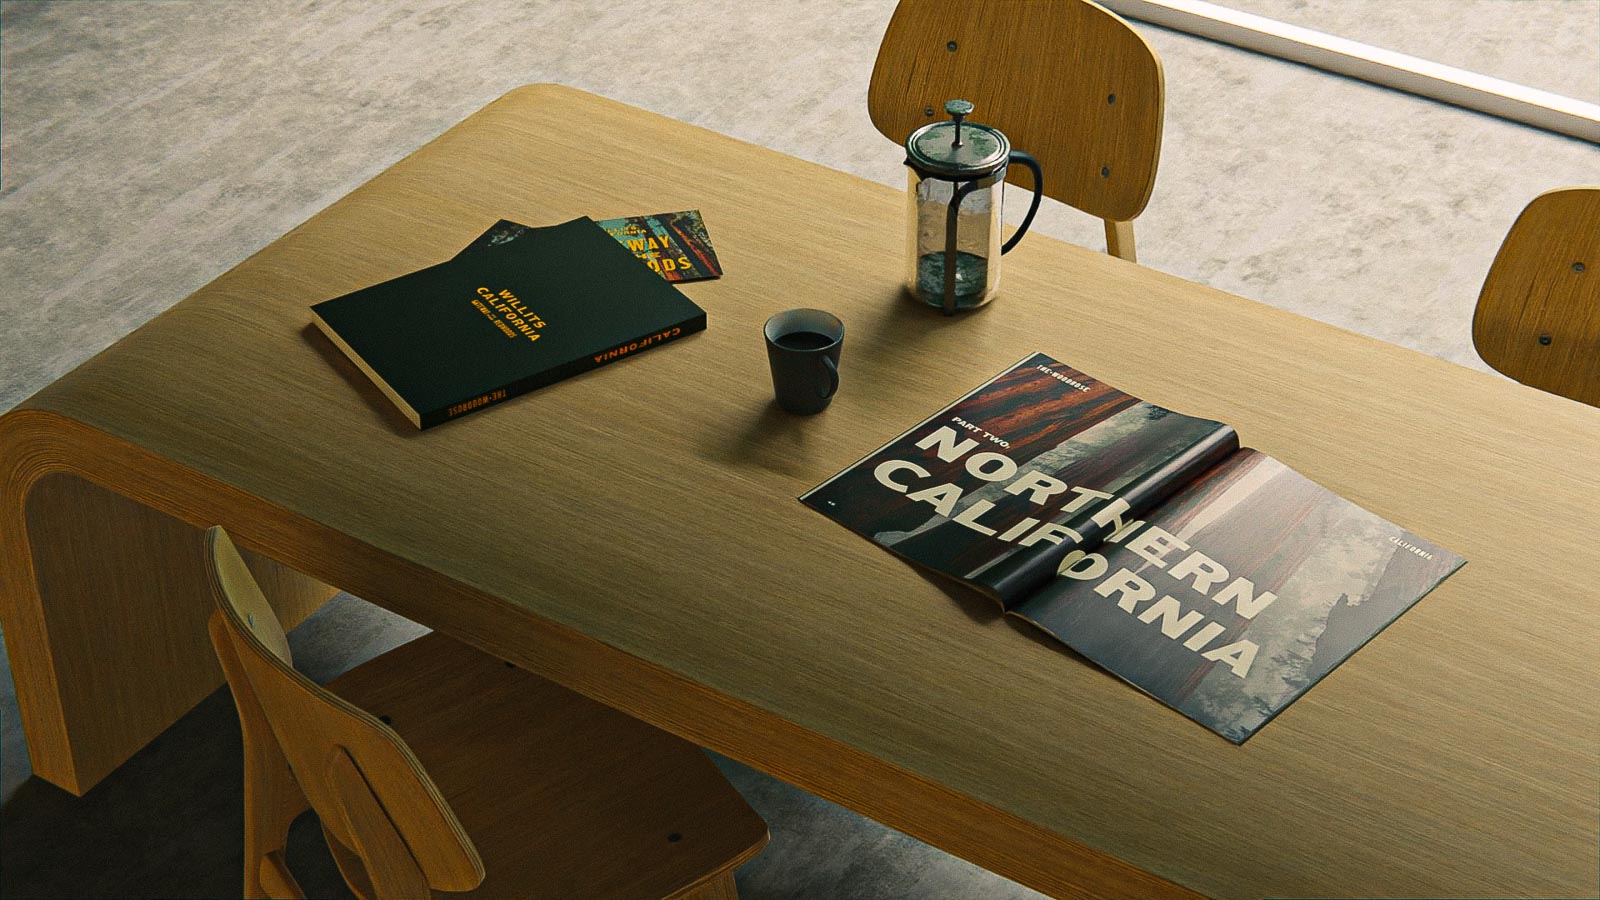 motel branding books on table